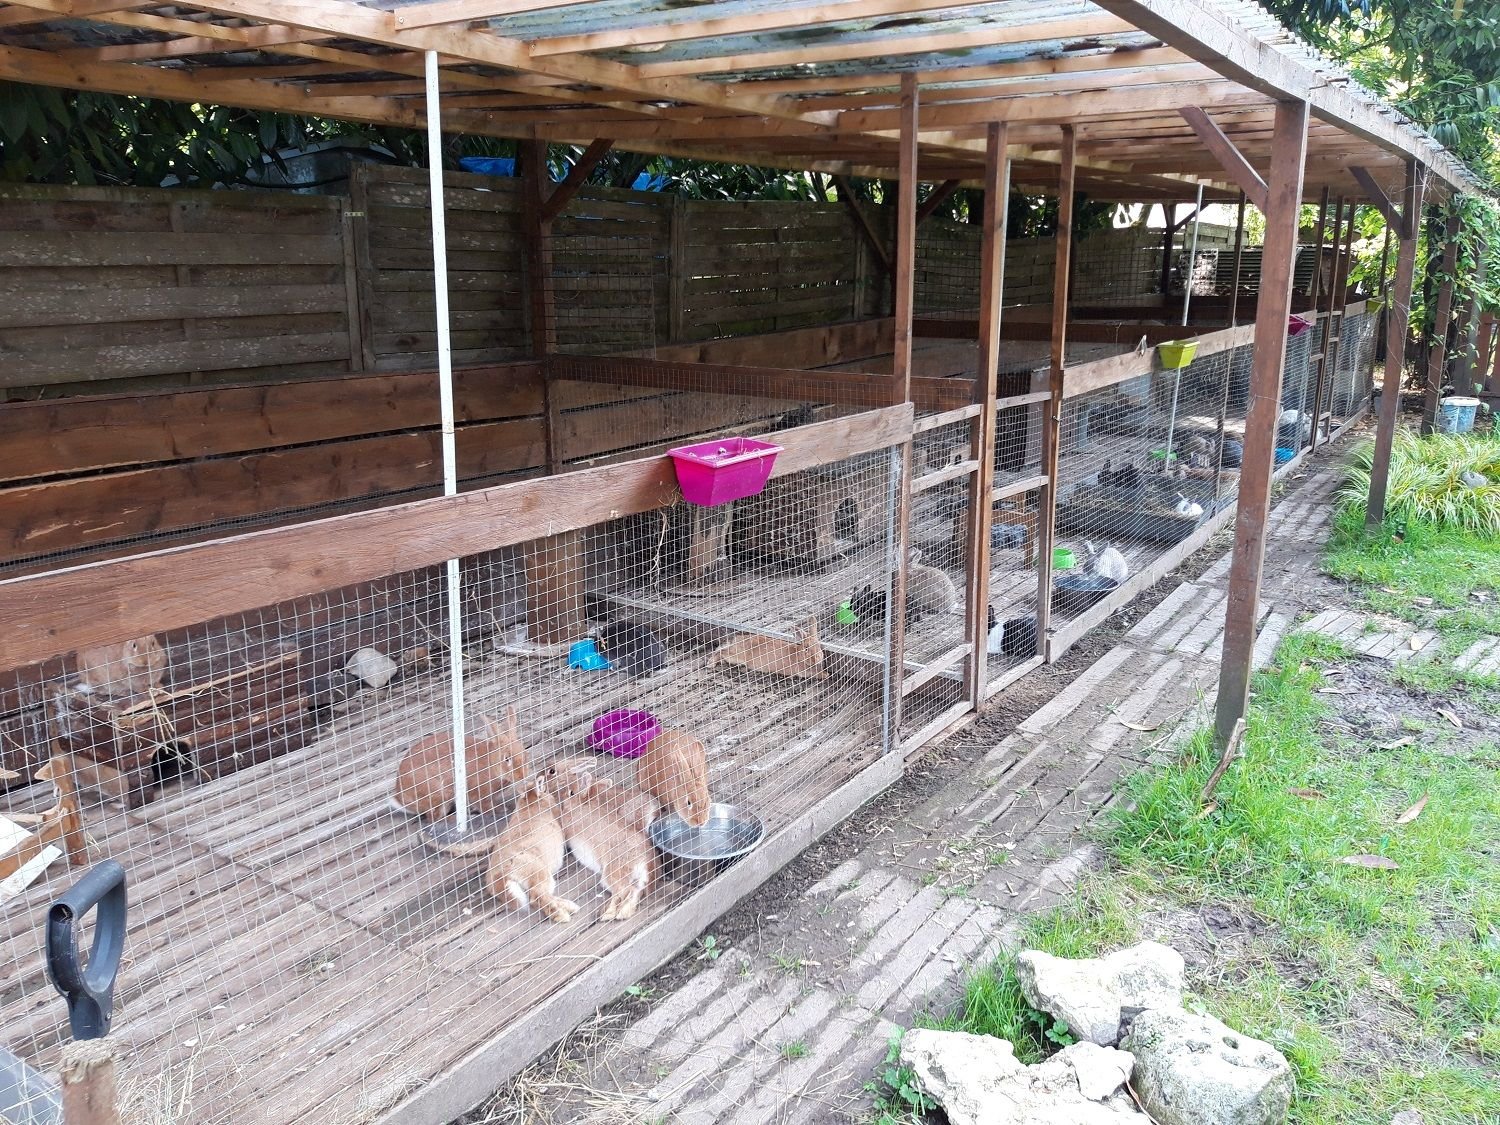 A Méréville (Essonne), l'Arche de Bagheera accueille de nouveaux animaux de compagnie en tout genre. Créé pour des rats, les pensionnaires de ce refuge sont surtout des lapins. /Arche de Bagheera